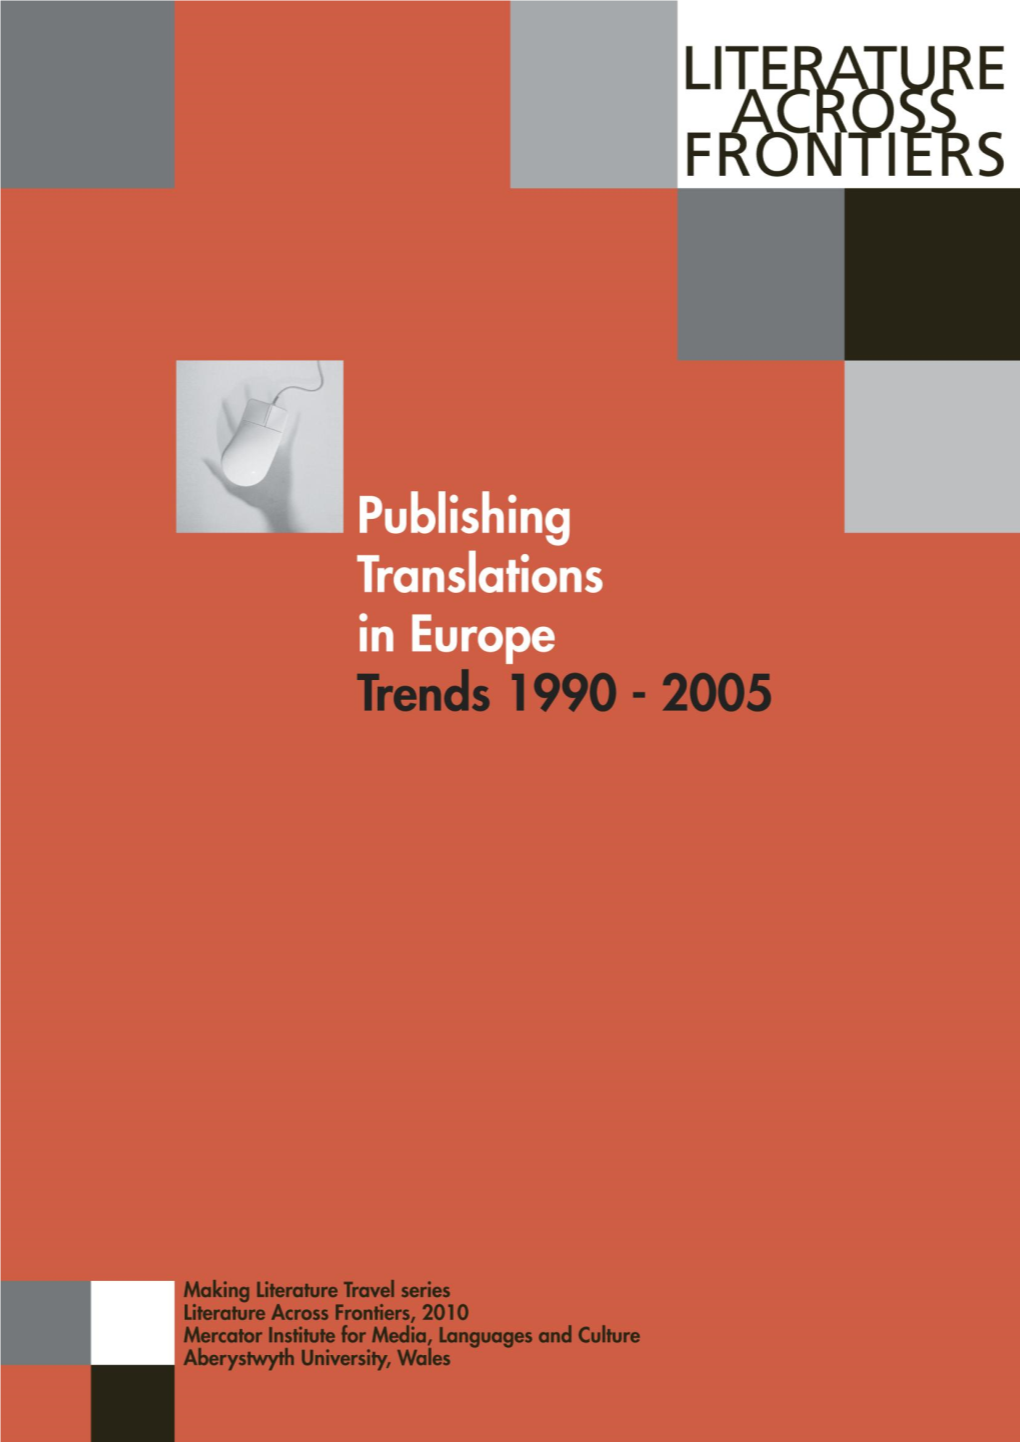 Trends 1990-2005